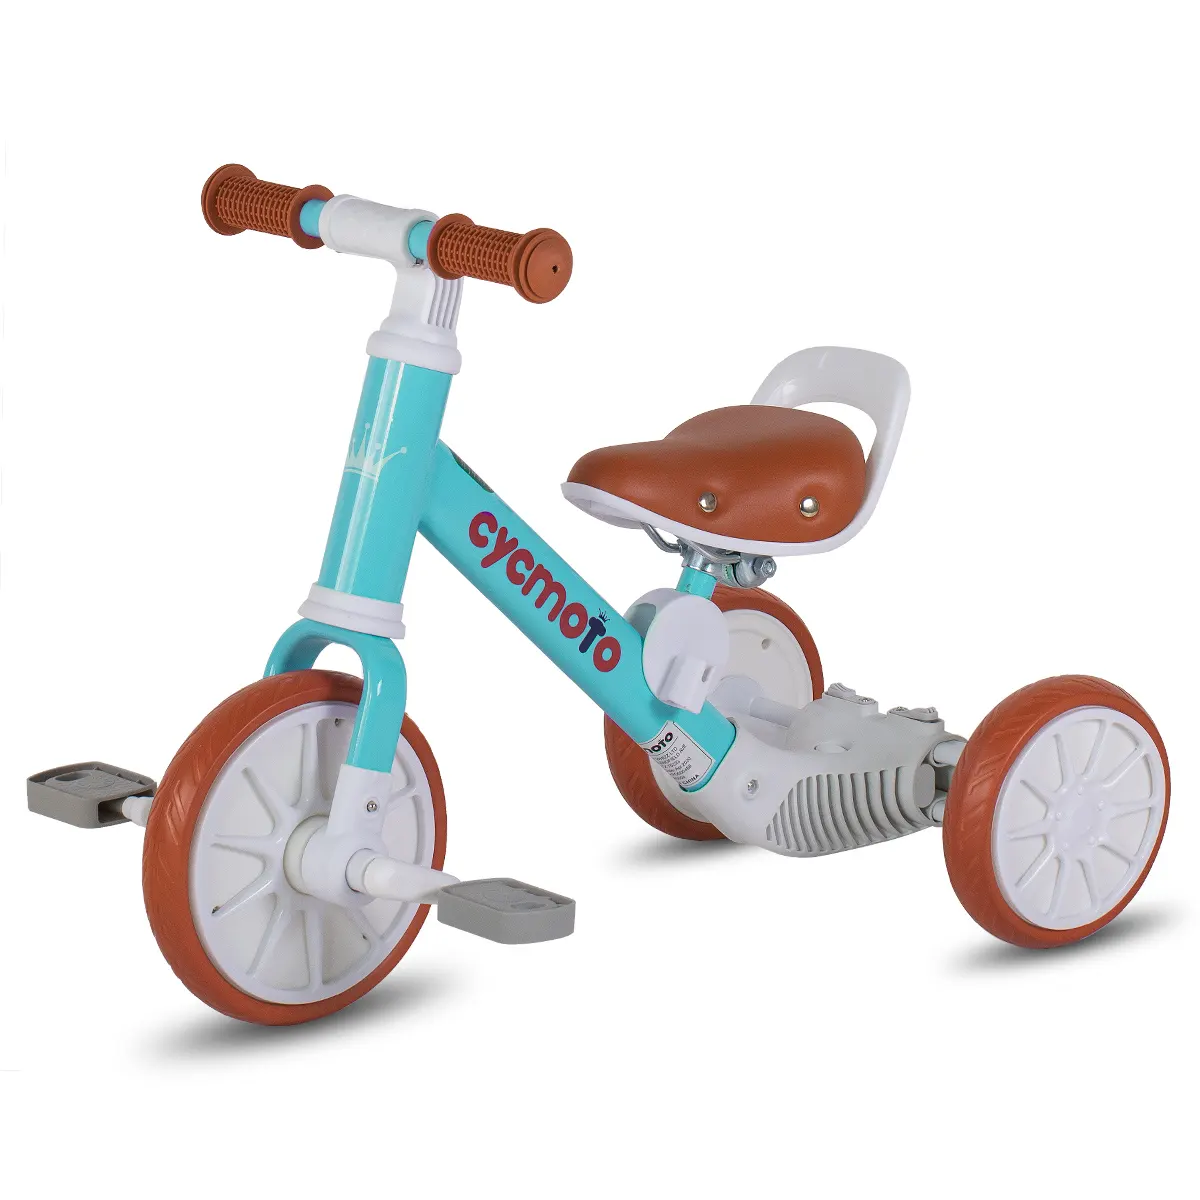 Joykie Углеродистая стальная рама детские игрушки автомобиль 3 колеса баланс велосипед детский трехколесный велосипед